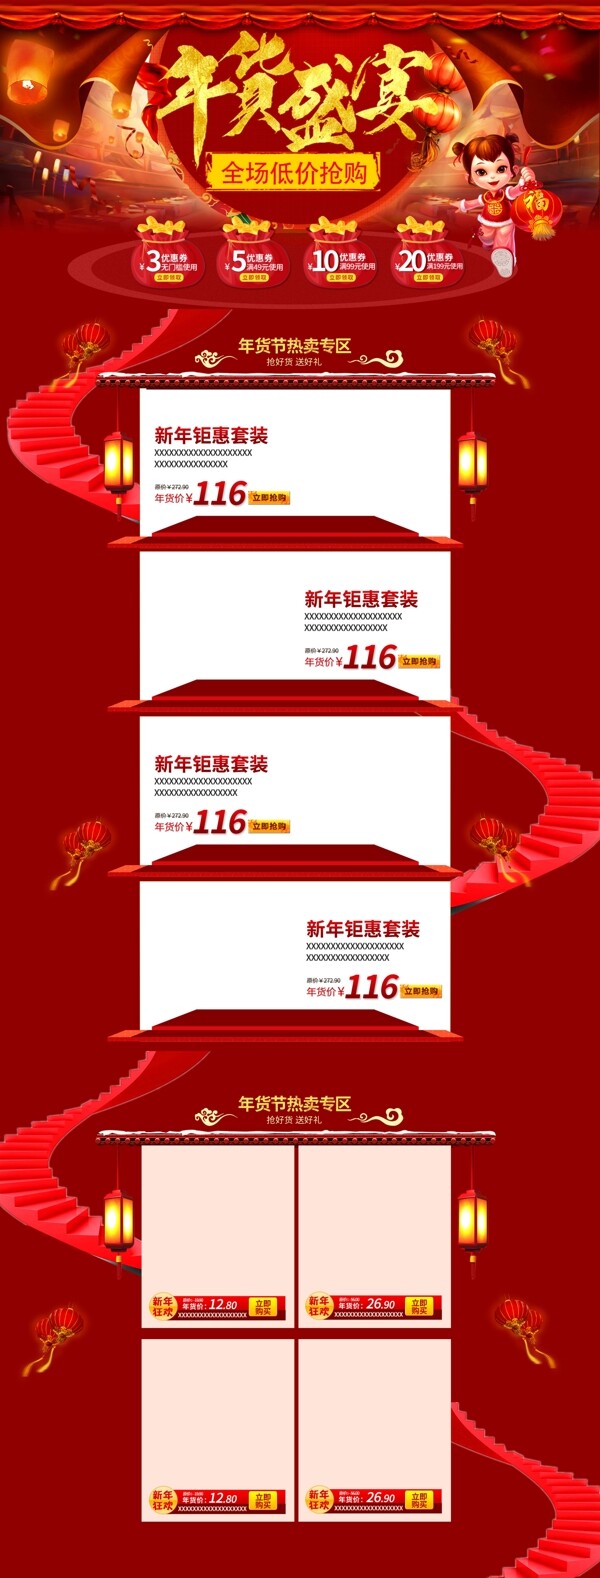 红色节日简约喜庆美食年货盛宴电商首页模板